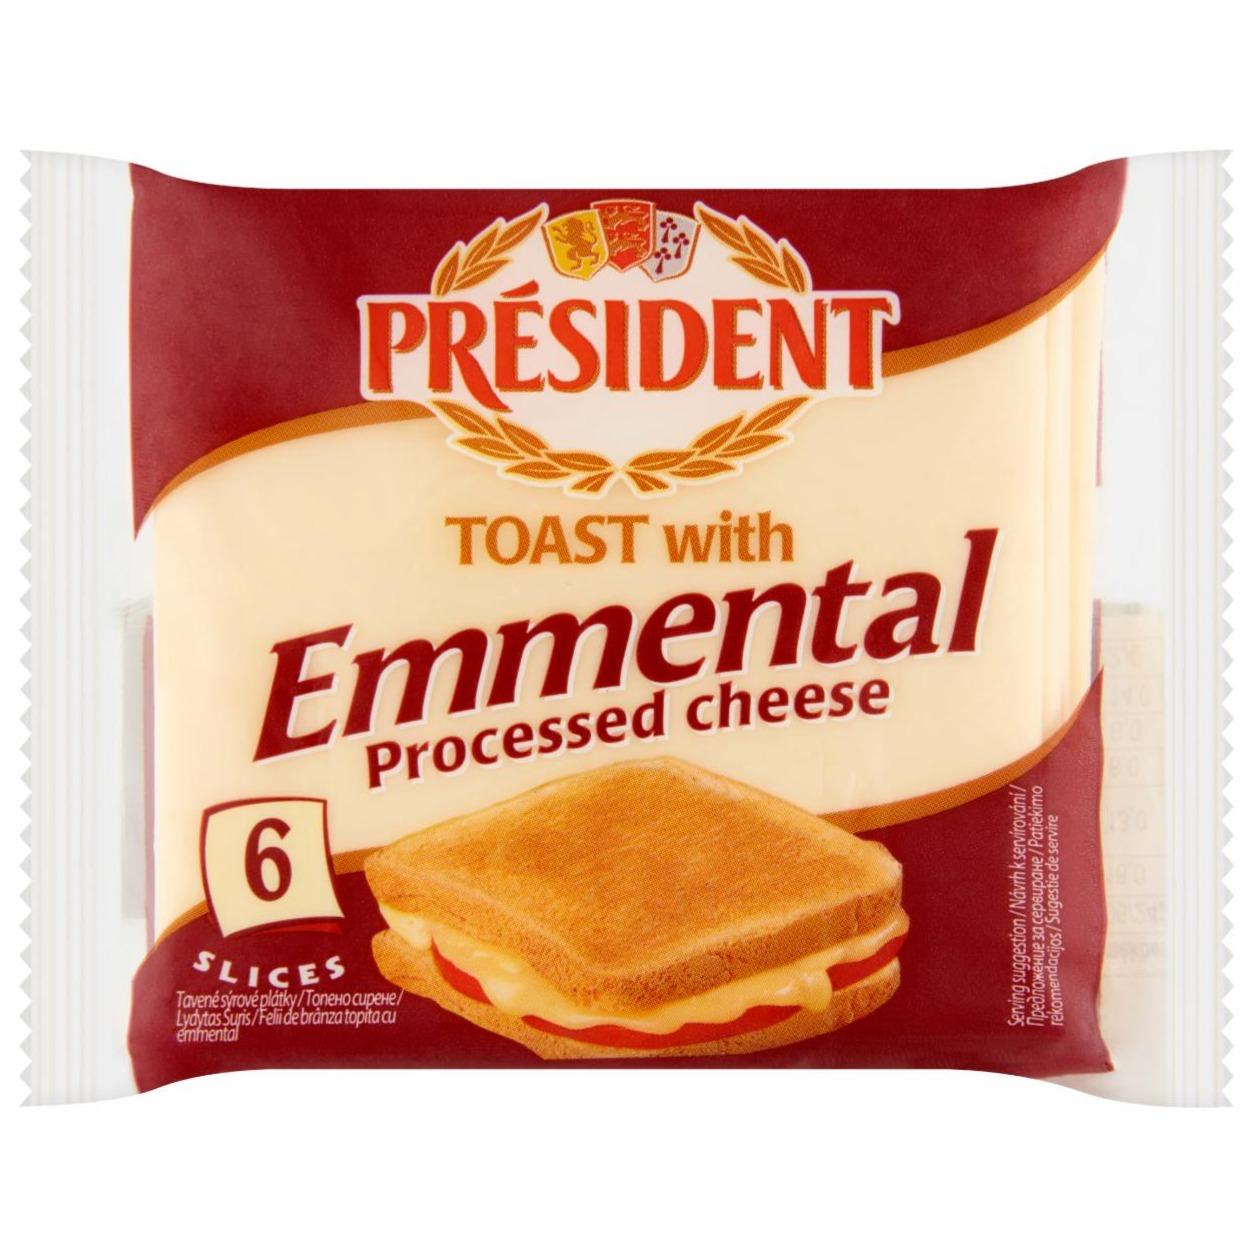 Képek - Président ementáli ízű félzsíros ömlesztett sajt 6 db 120 g